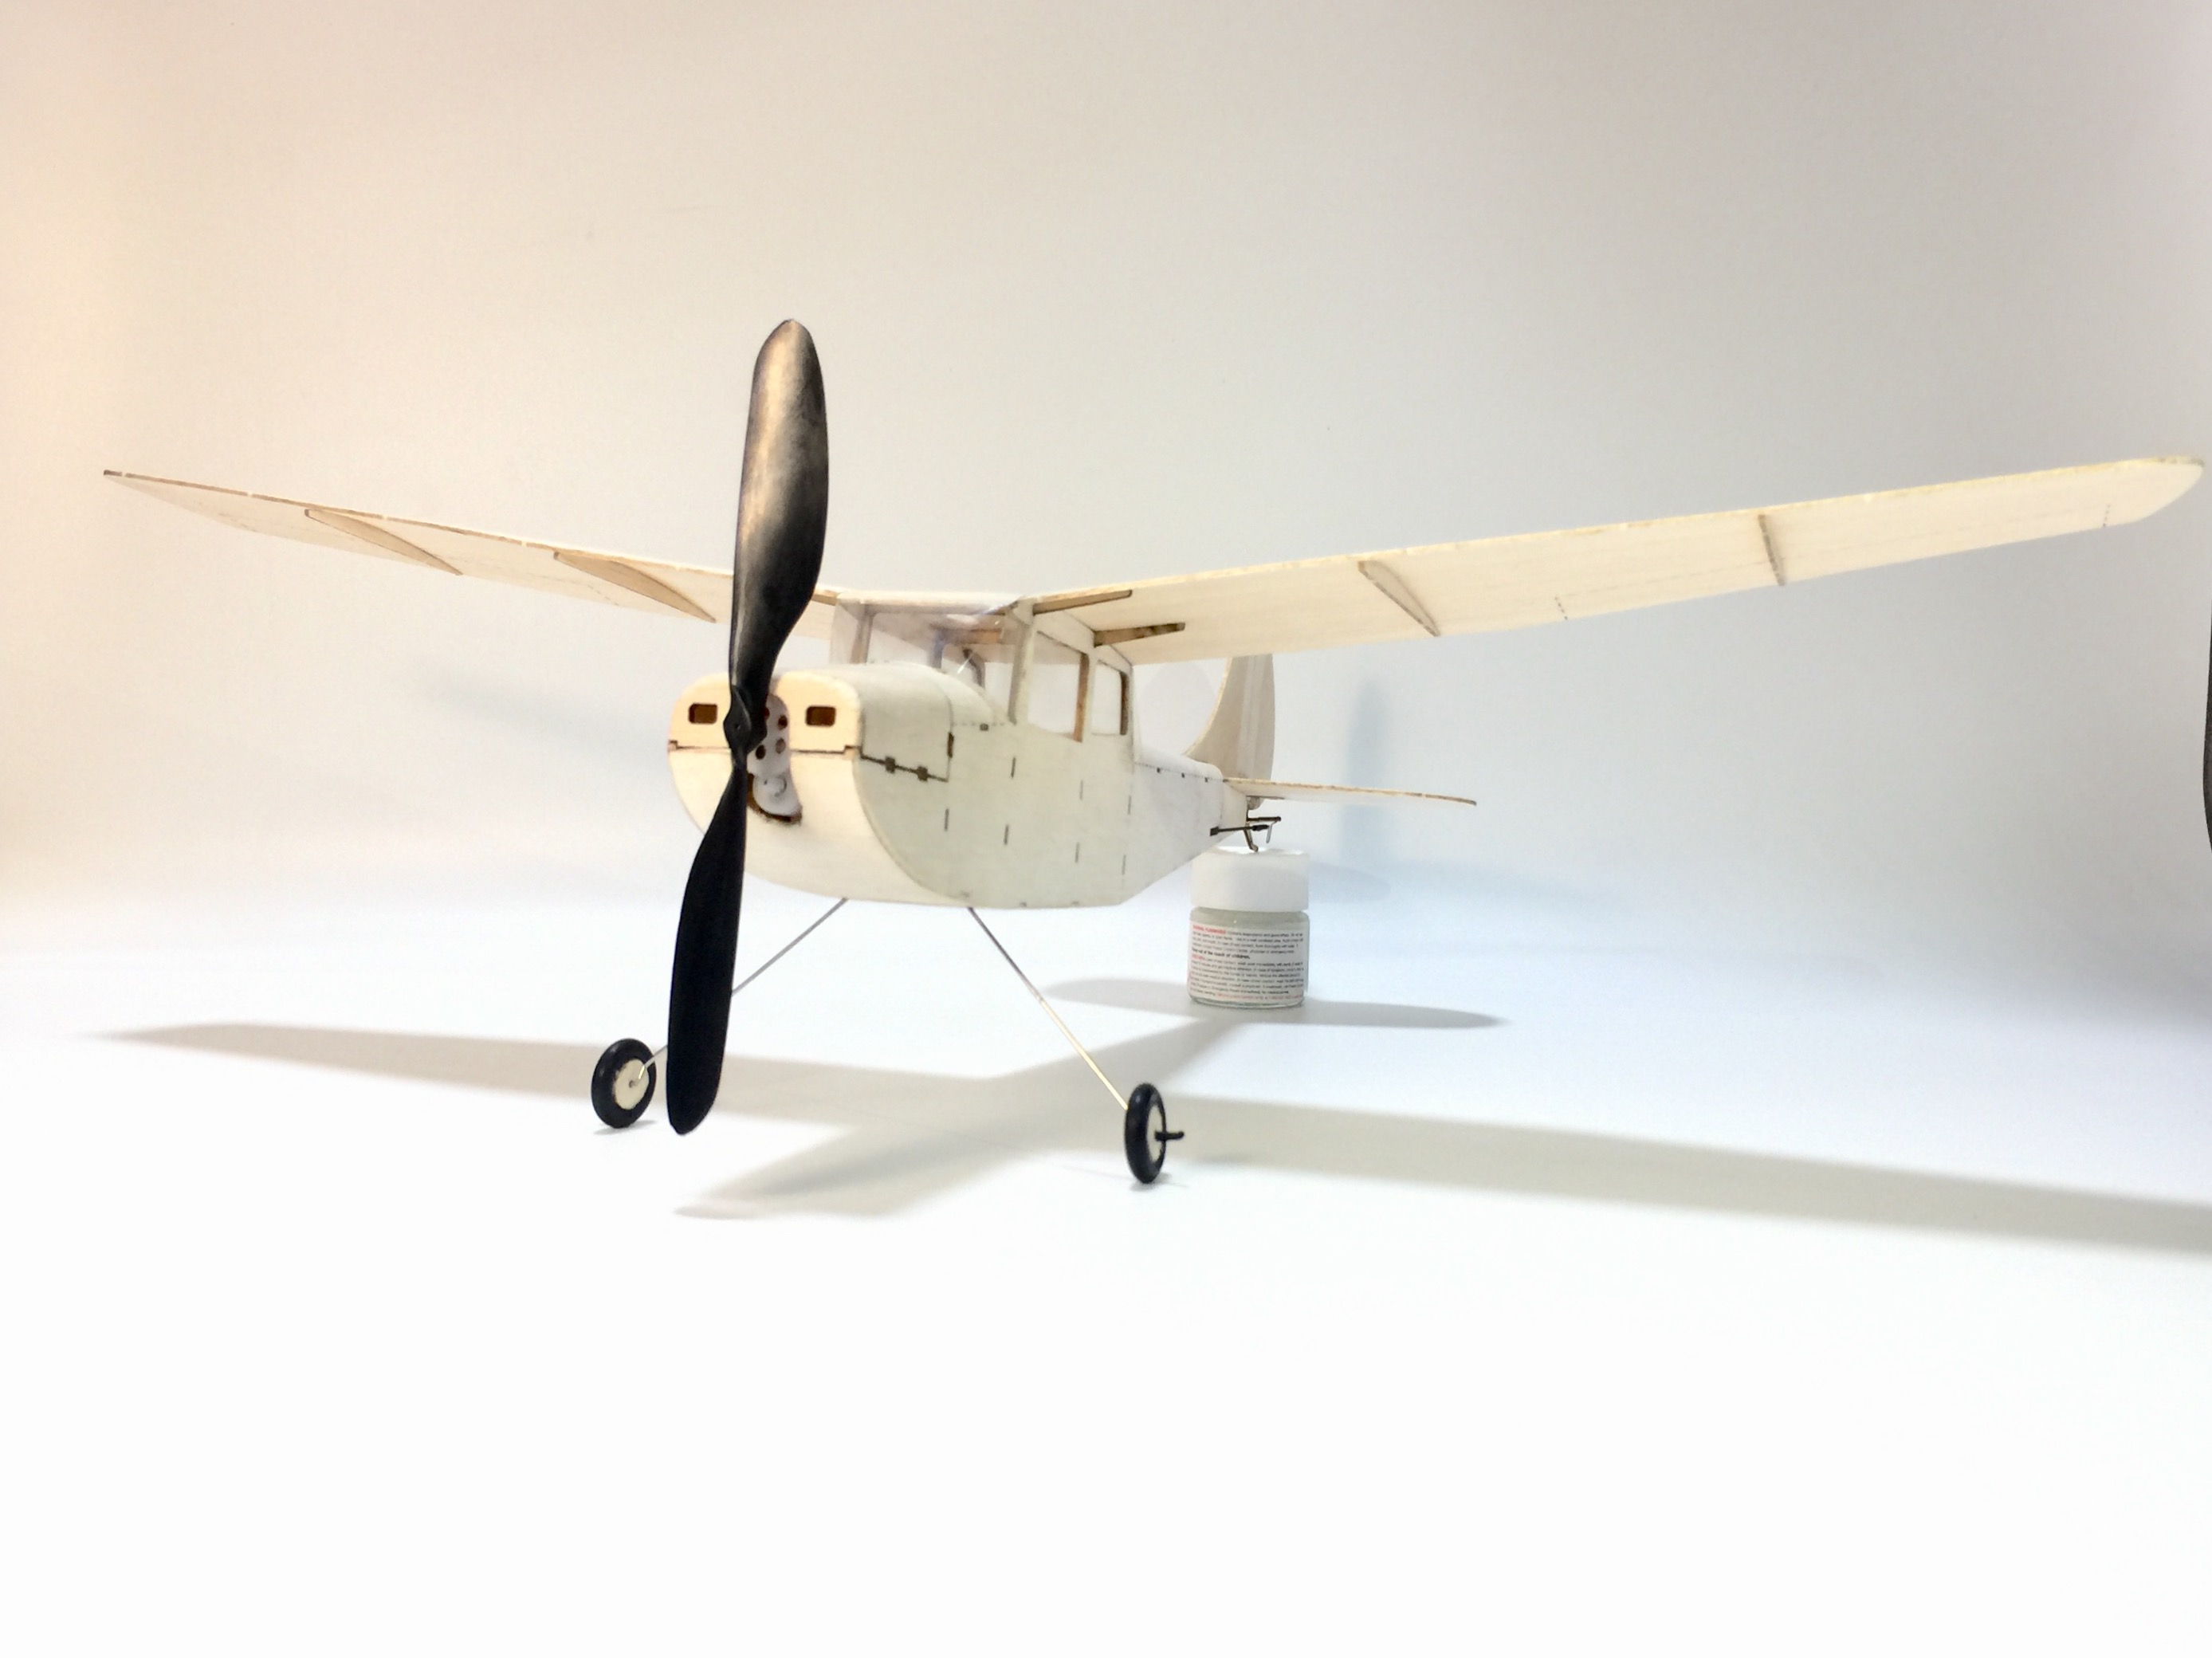 MinimumRC-Cessna-L-19-460mm-Wingspan-Balsa-Wood-Laser-Cut-RC-Airplane-KIT-1210610